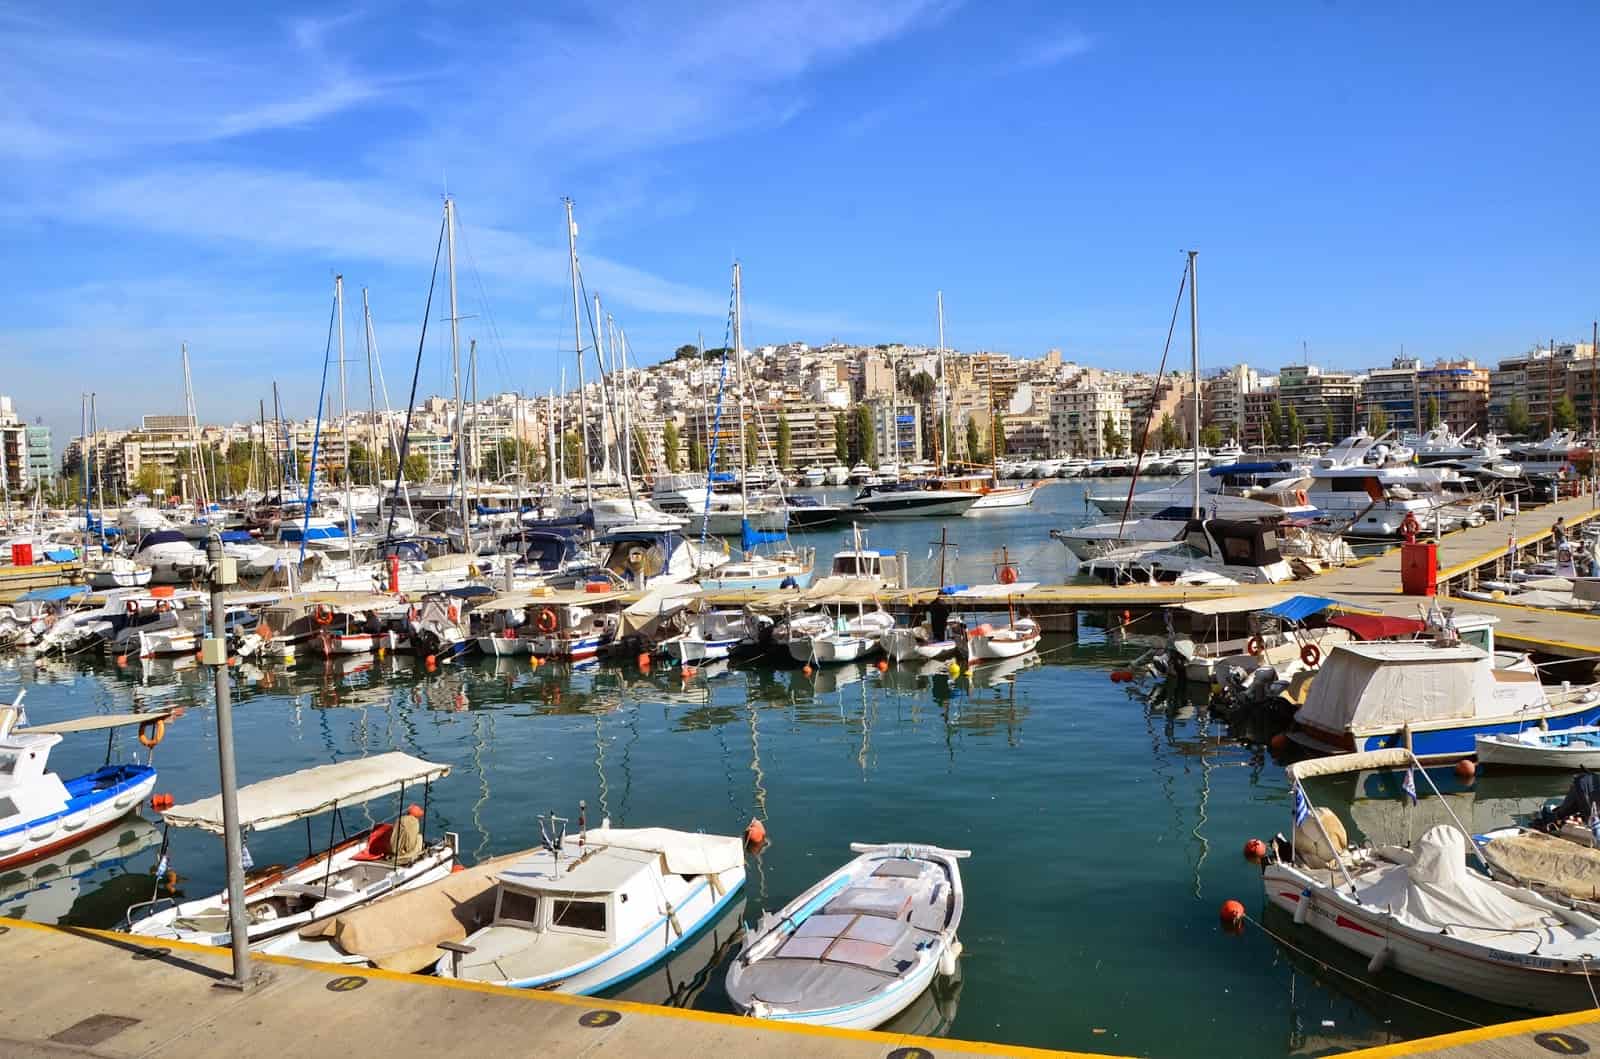 Pasalimani in Piraeus, Greece